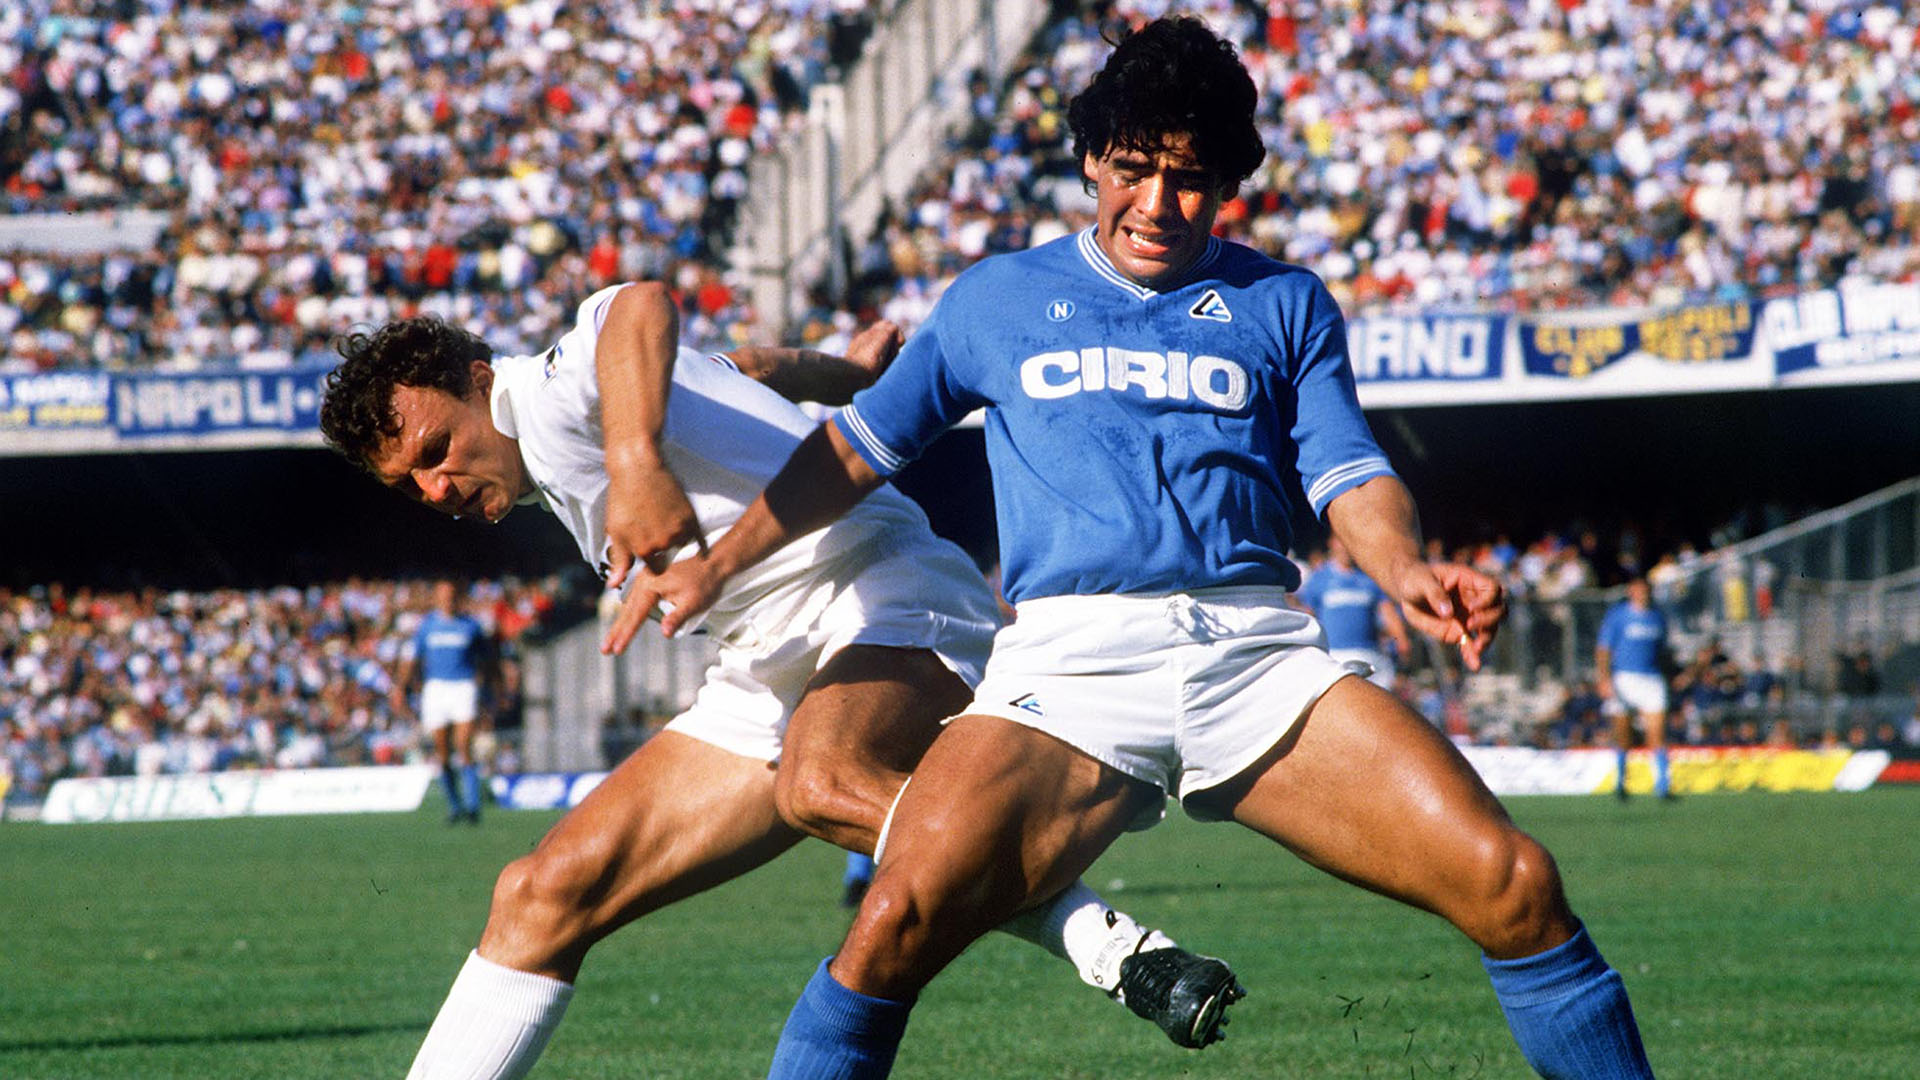 Diego jugó en Napoli entre 1984 y 1991. Fue un ídolo para miles de hinchas que hoy lloran su muerte. 